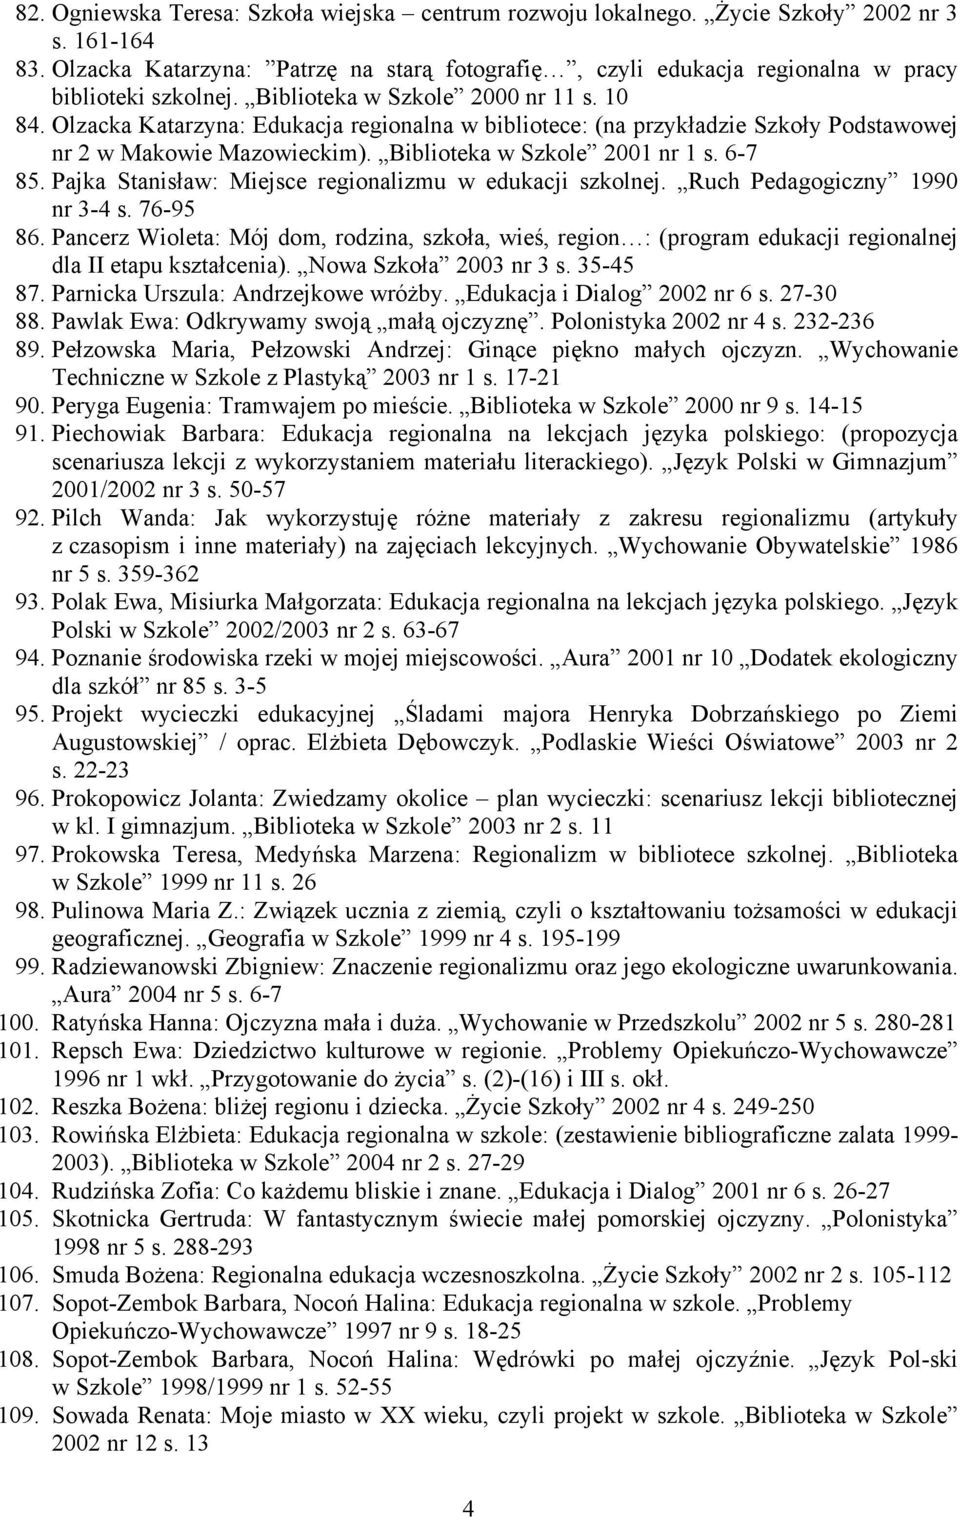 Olzacka Katarzyna: Edukacja regionalna w bibliotece: (na przykładzie Szkoły Podstawowej nr 2 w Makowie Mazowieckim). Biblioteka w Szkole 2001 nr 1 s. 6-7 85.